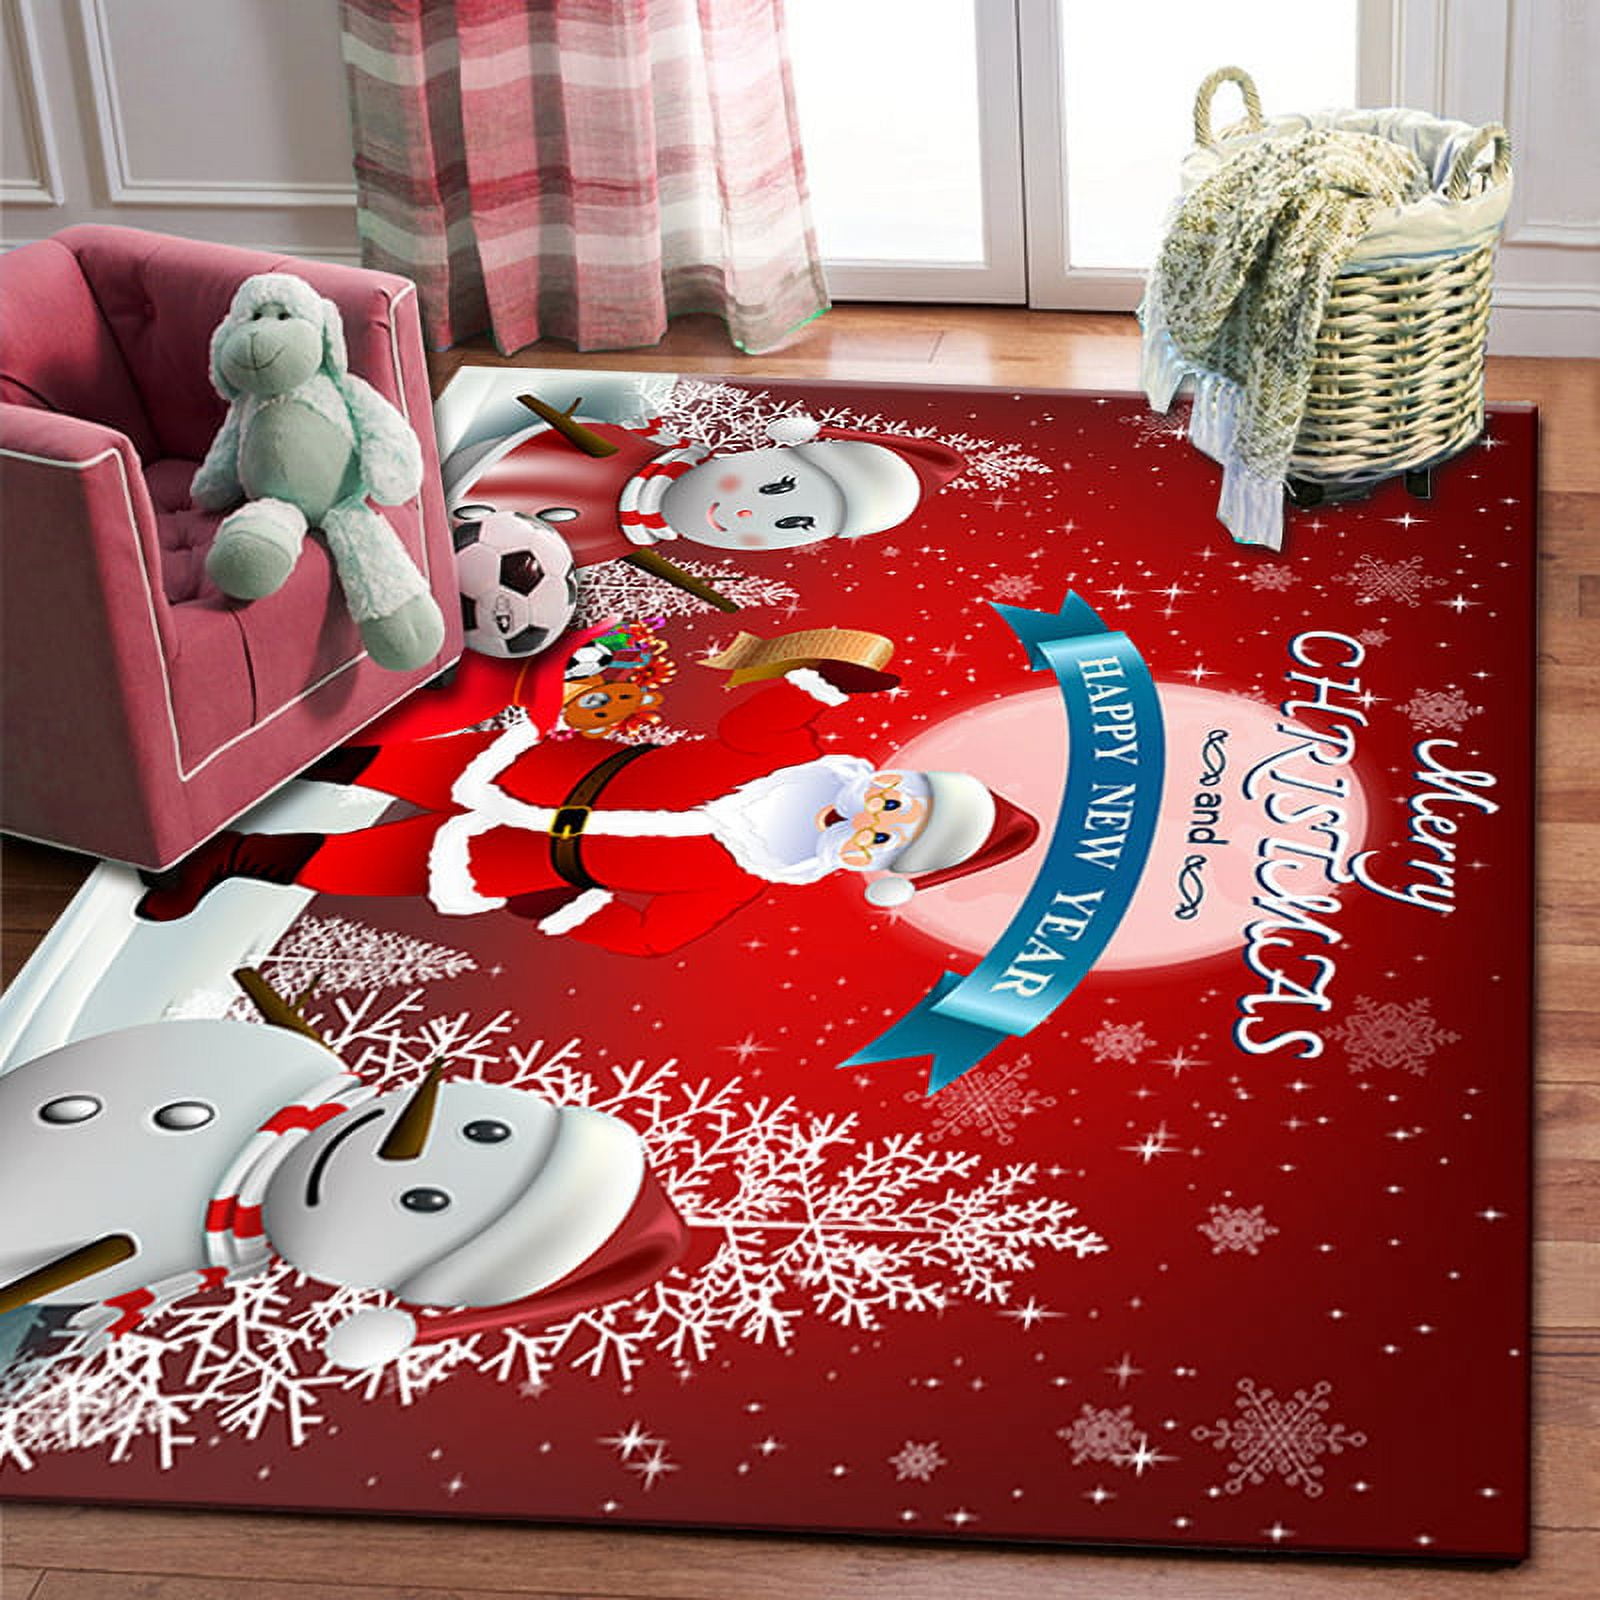  Winter Christmas Area Rug，5x8ft, Santa's Sleigh and